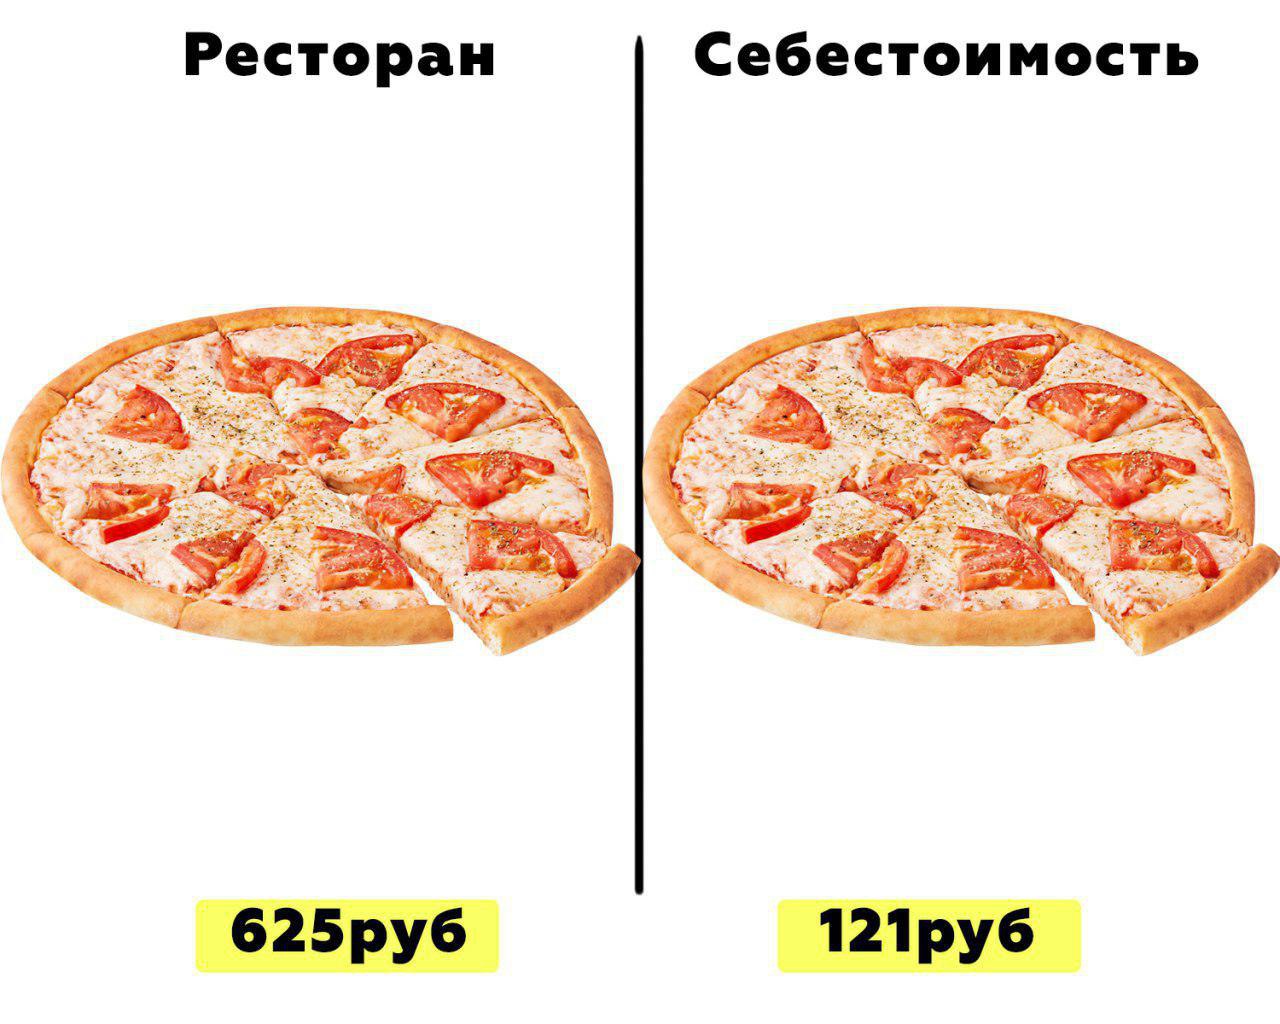 тех карта пицца мясная фото 6